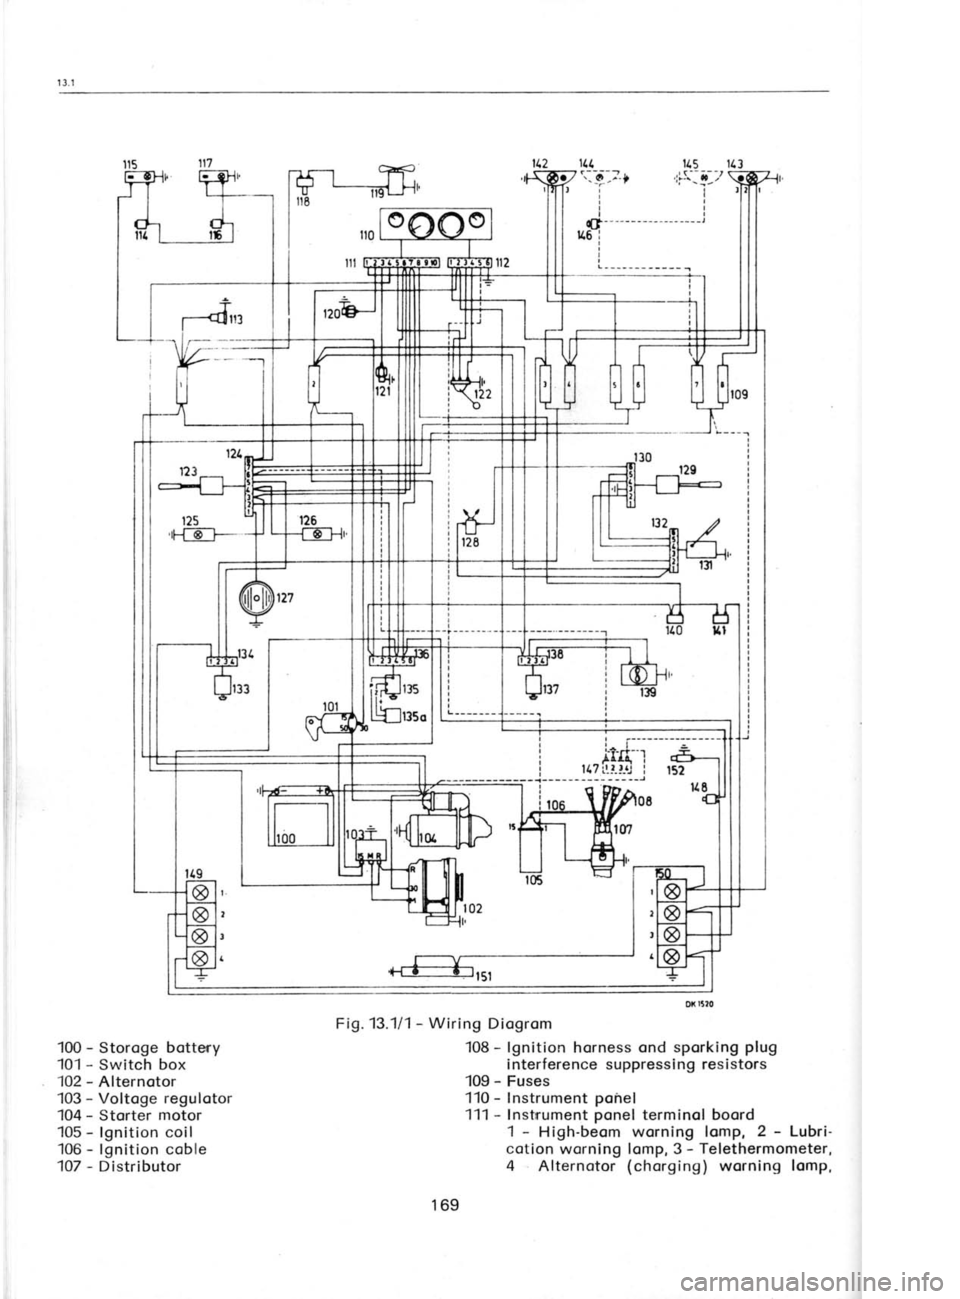 SKODA 120L 1980  Workshop Manual 1
1
1
1
1
1:
1r
1l
t,
1,
1:
1:
1l?
ffi{,
ll
---r---
i
fdll
100  - 
Storoge botteny
101  - 
Switch box
102  - 
Alternotor
103  - 
Voltoge  regulotor
104  - 
Storter  motor
105  - 
lgnition coil
106  